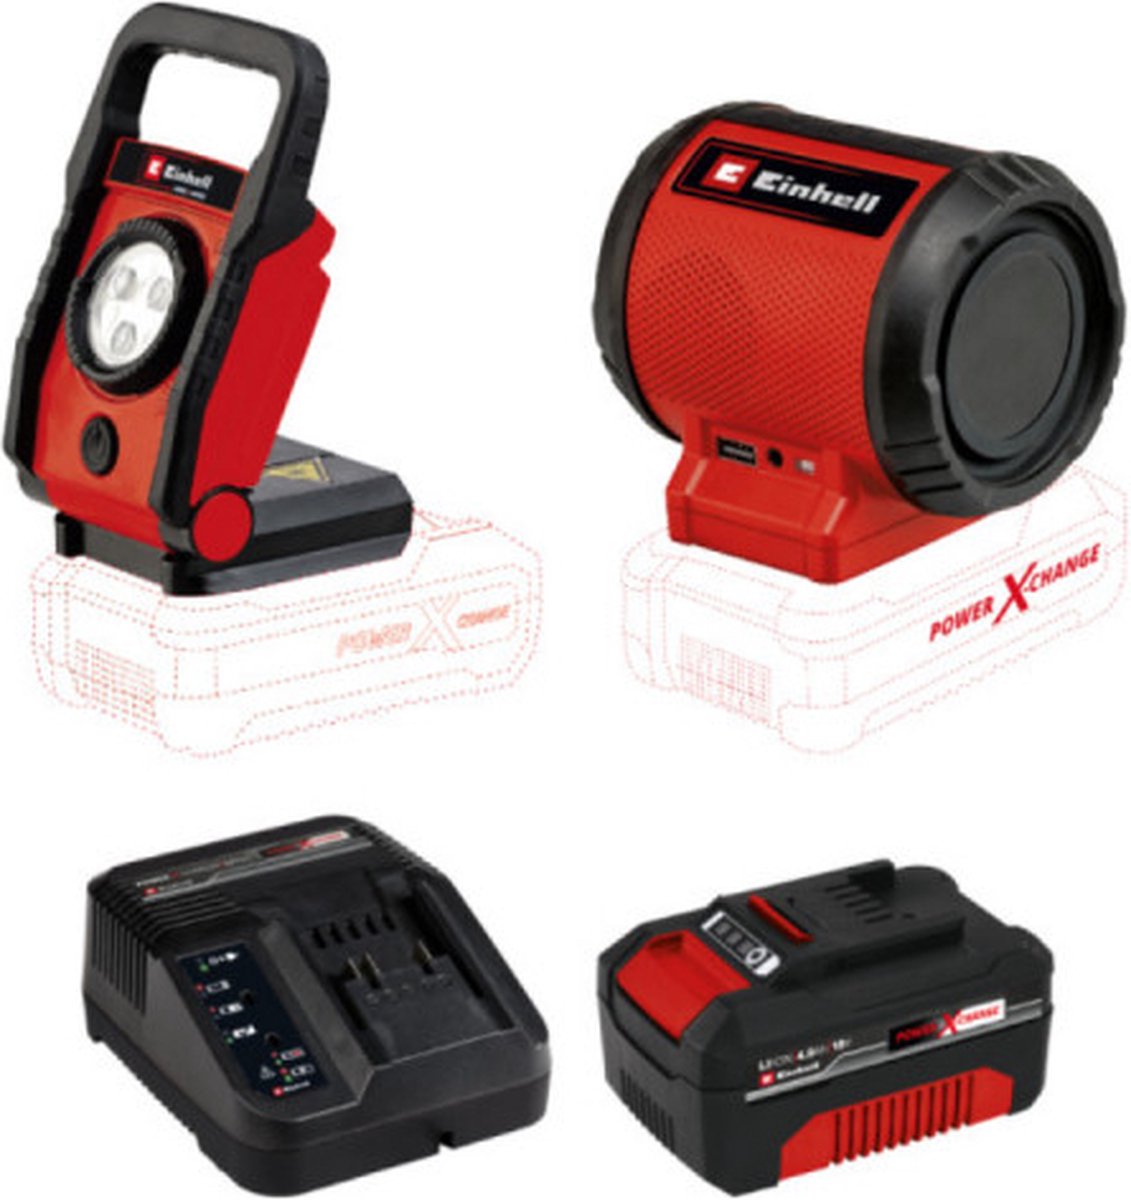 Pack EINHELL 18V Power X-Change - LED Lamp - TE-CL 18 Li Solo - Speaker - TC-SR 18 Li BT - Solo - Starter Kit Power 4.0A